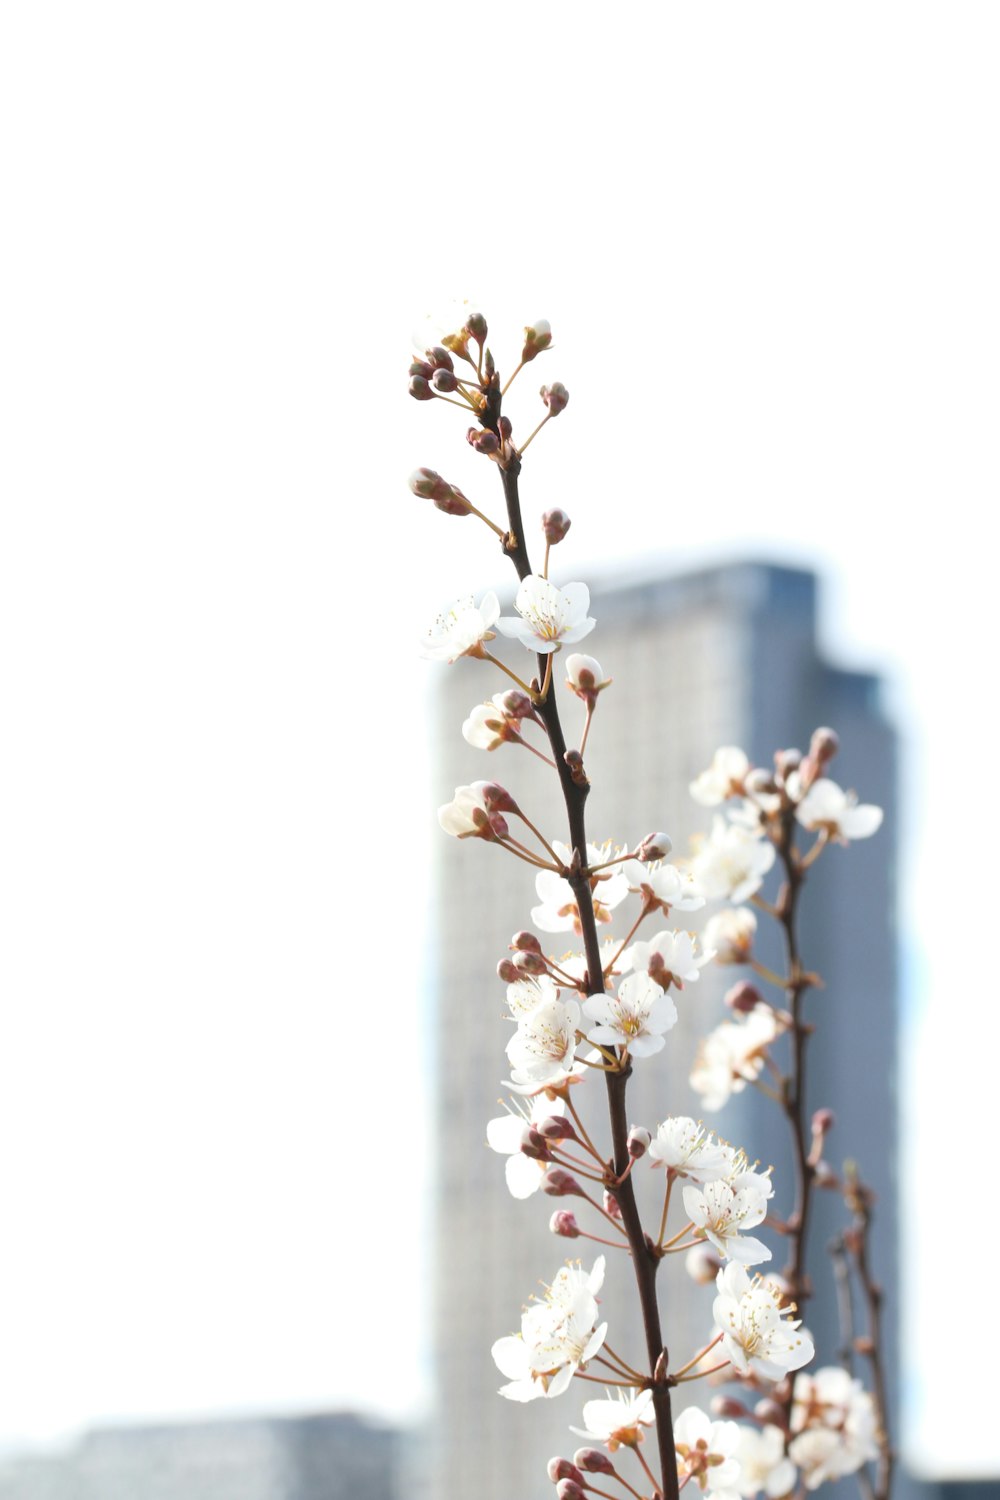 昼間の白桜のセレクティブフォーカス撮影